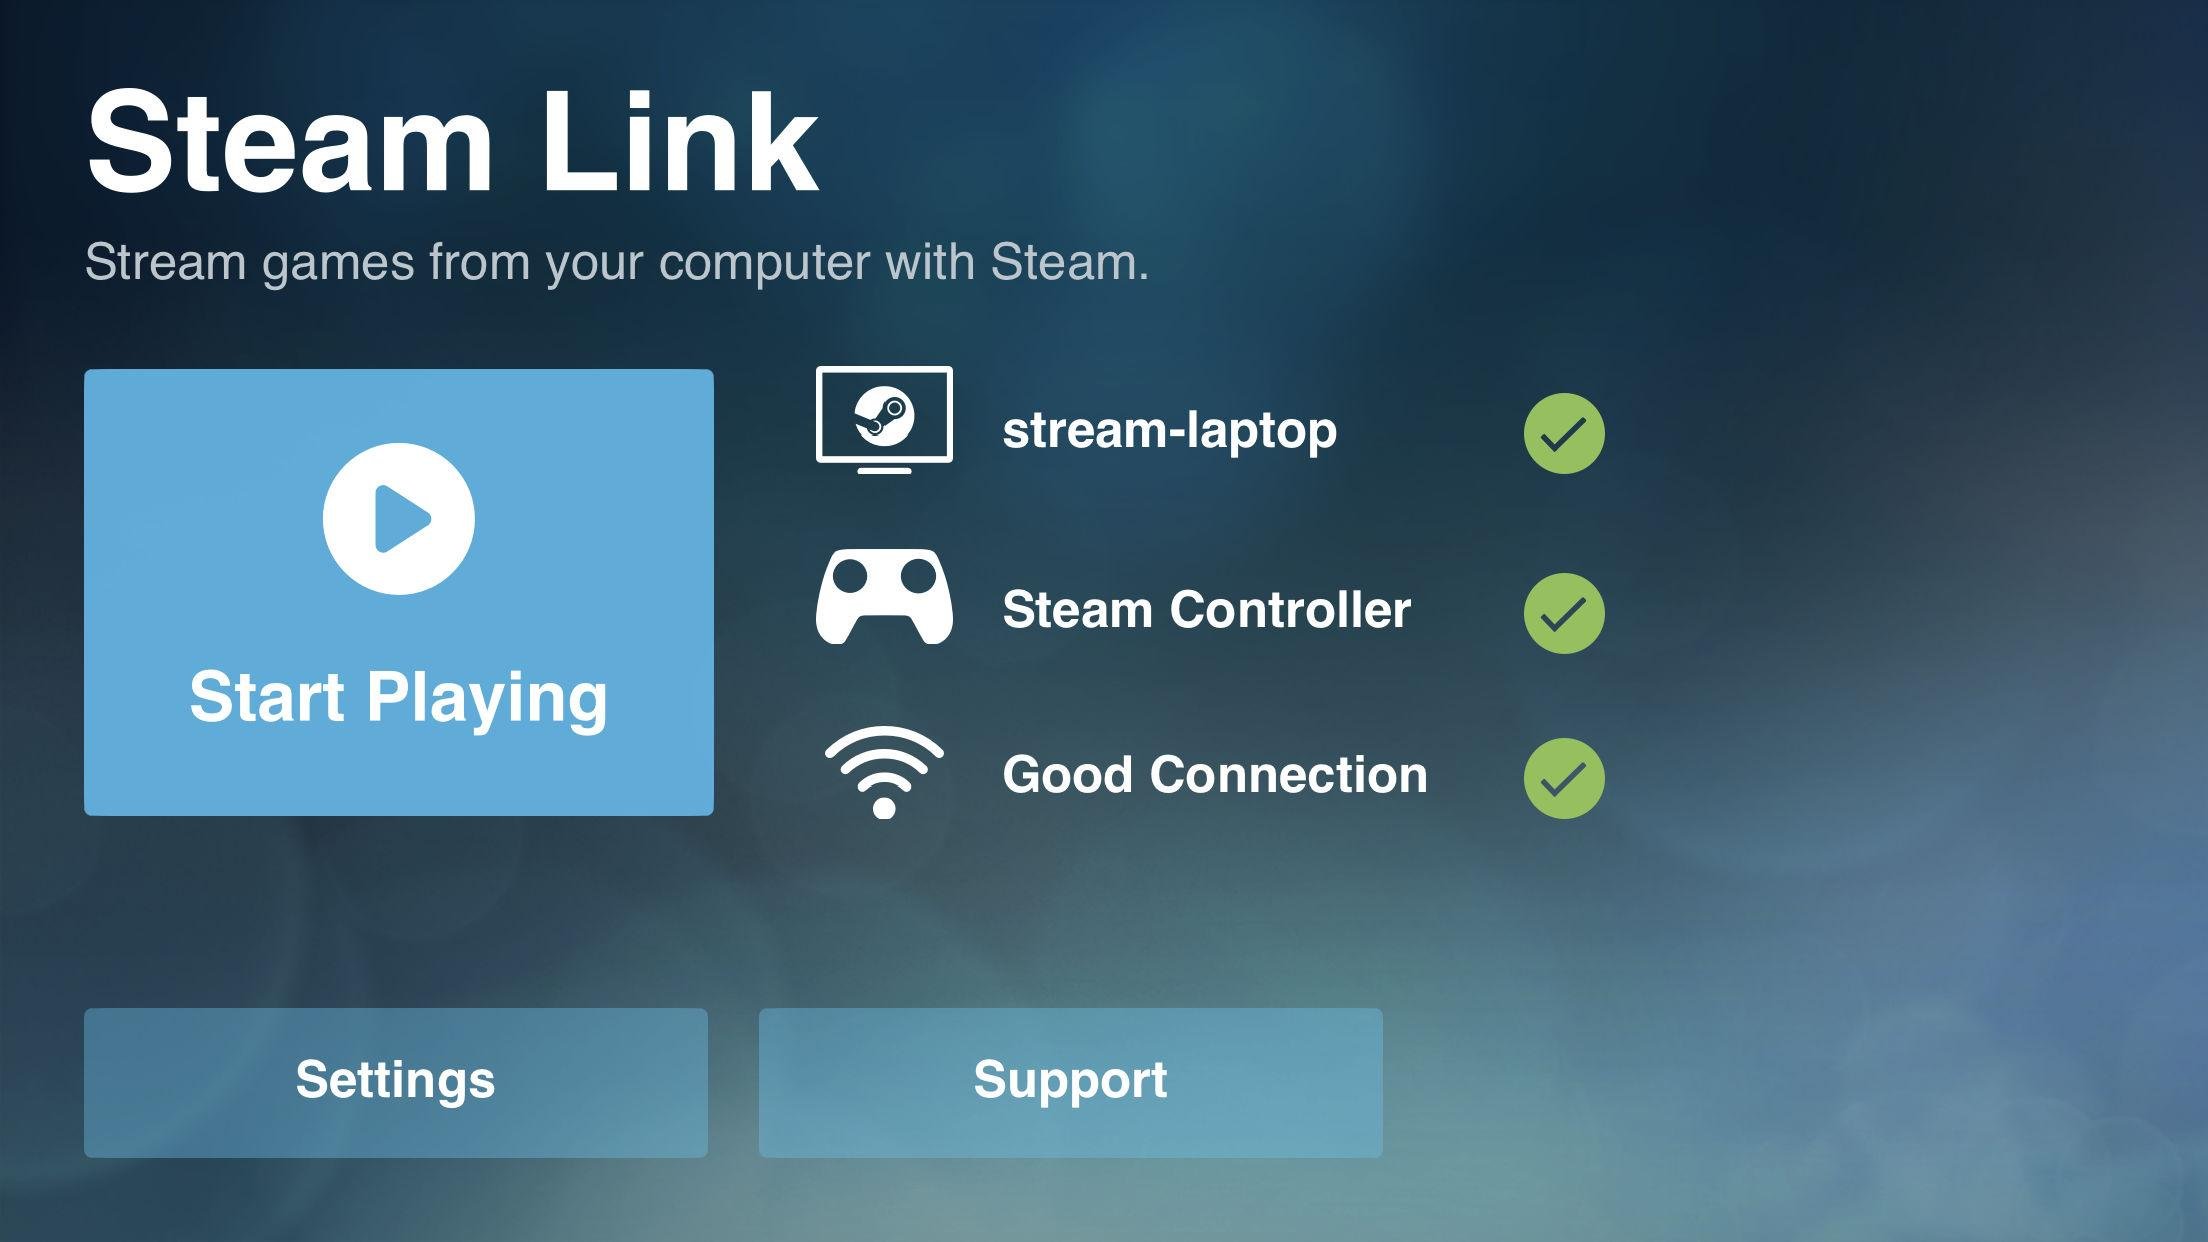 يضيف "Steam Link" الجديد دعمًا لوظائف لوحة المفاتيح والماوس ، وتشغيل الموسيقى أثناء البث ، والمزيد على iOS 4